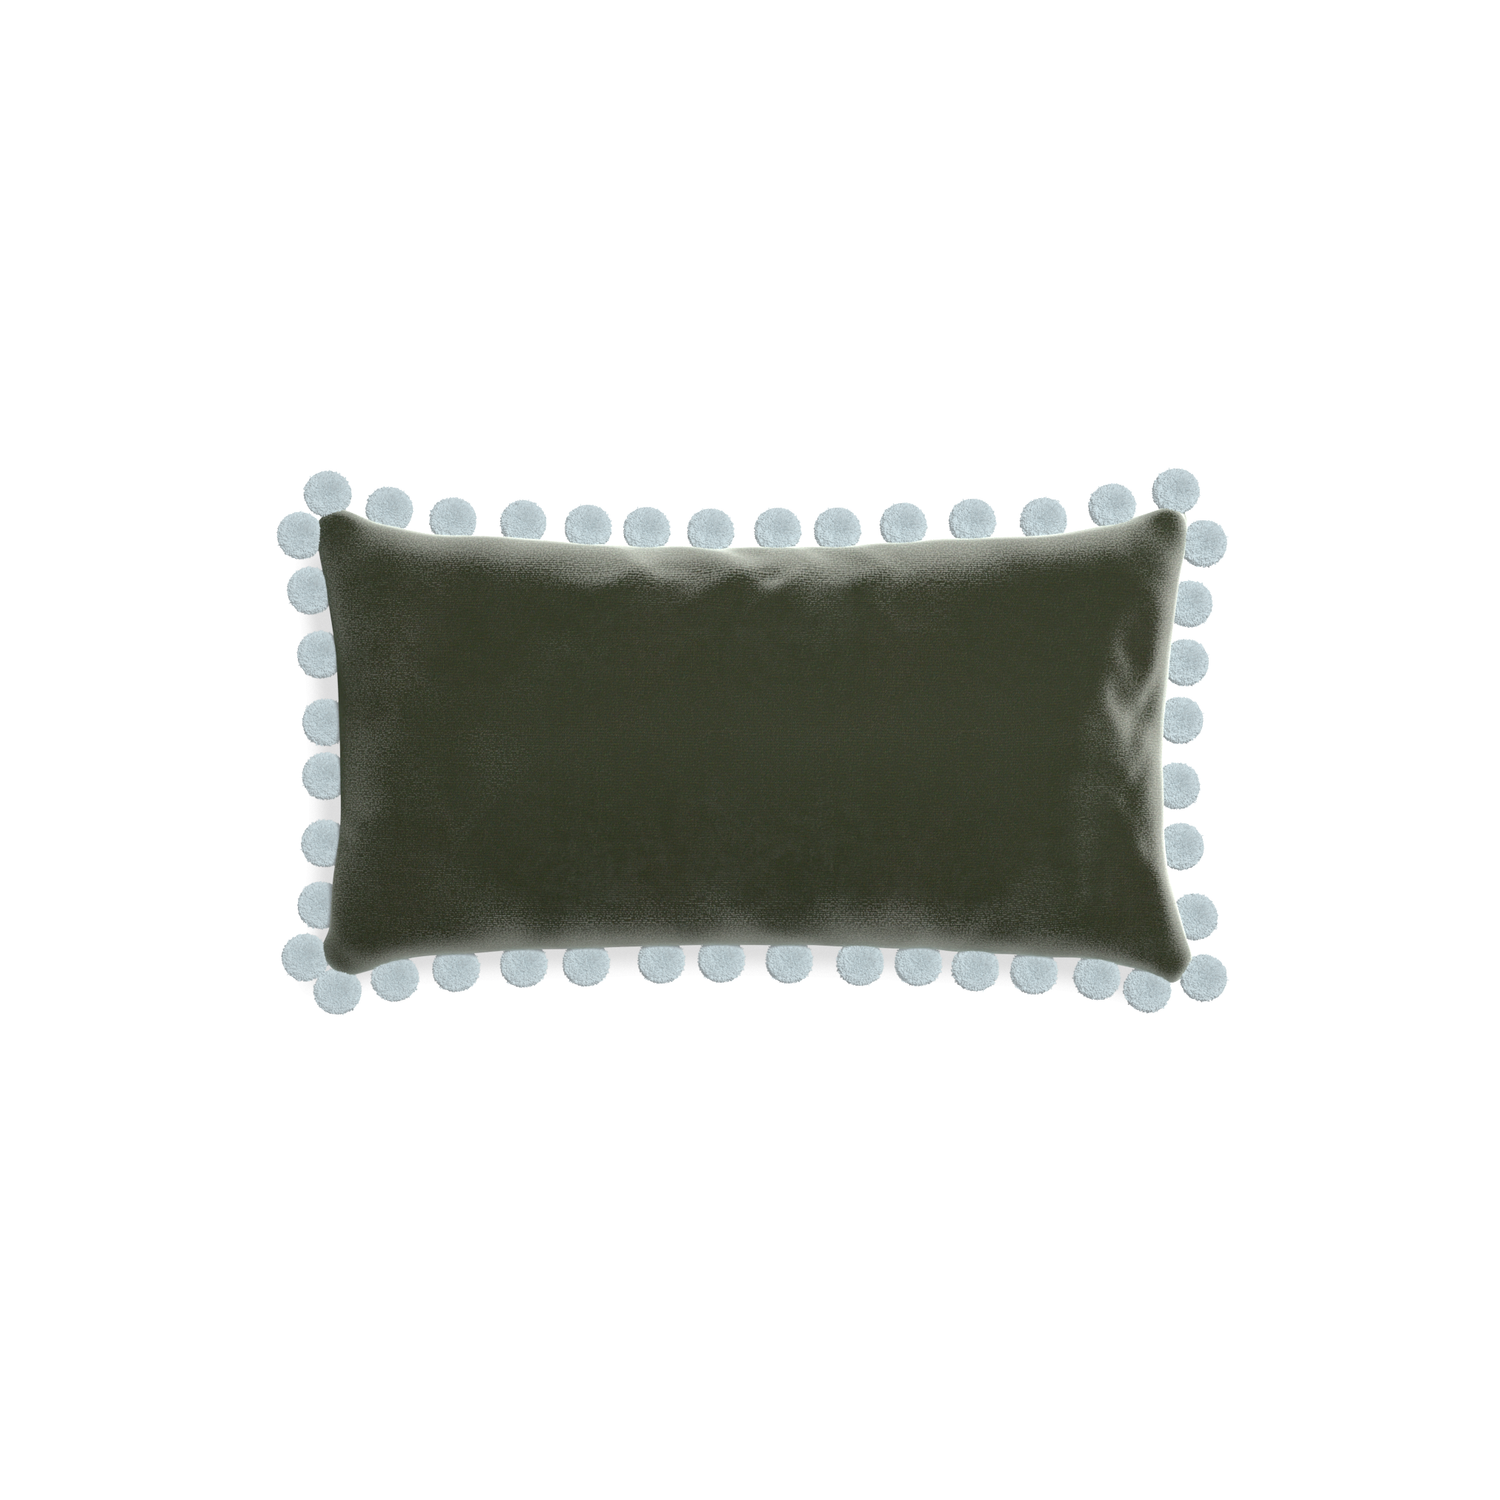 rectangle fern green velvet pillow with light blue pom poms